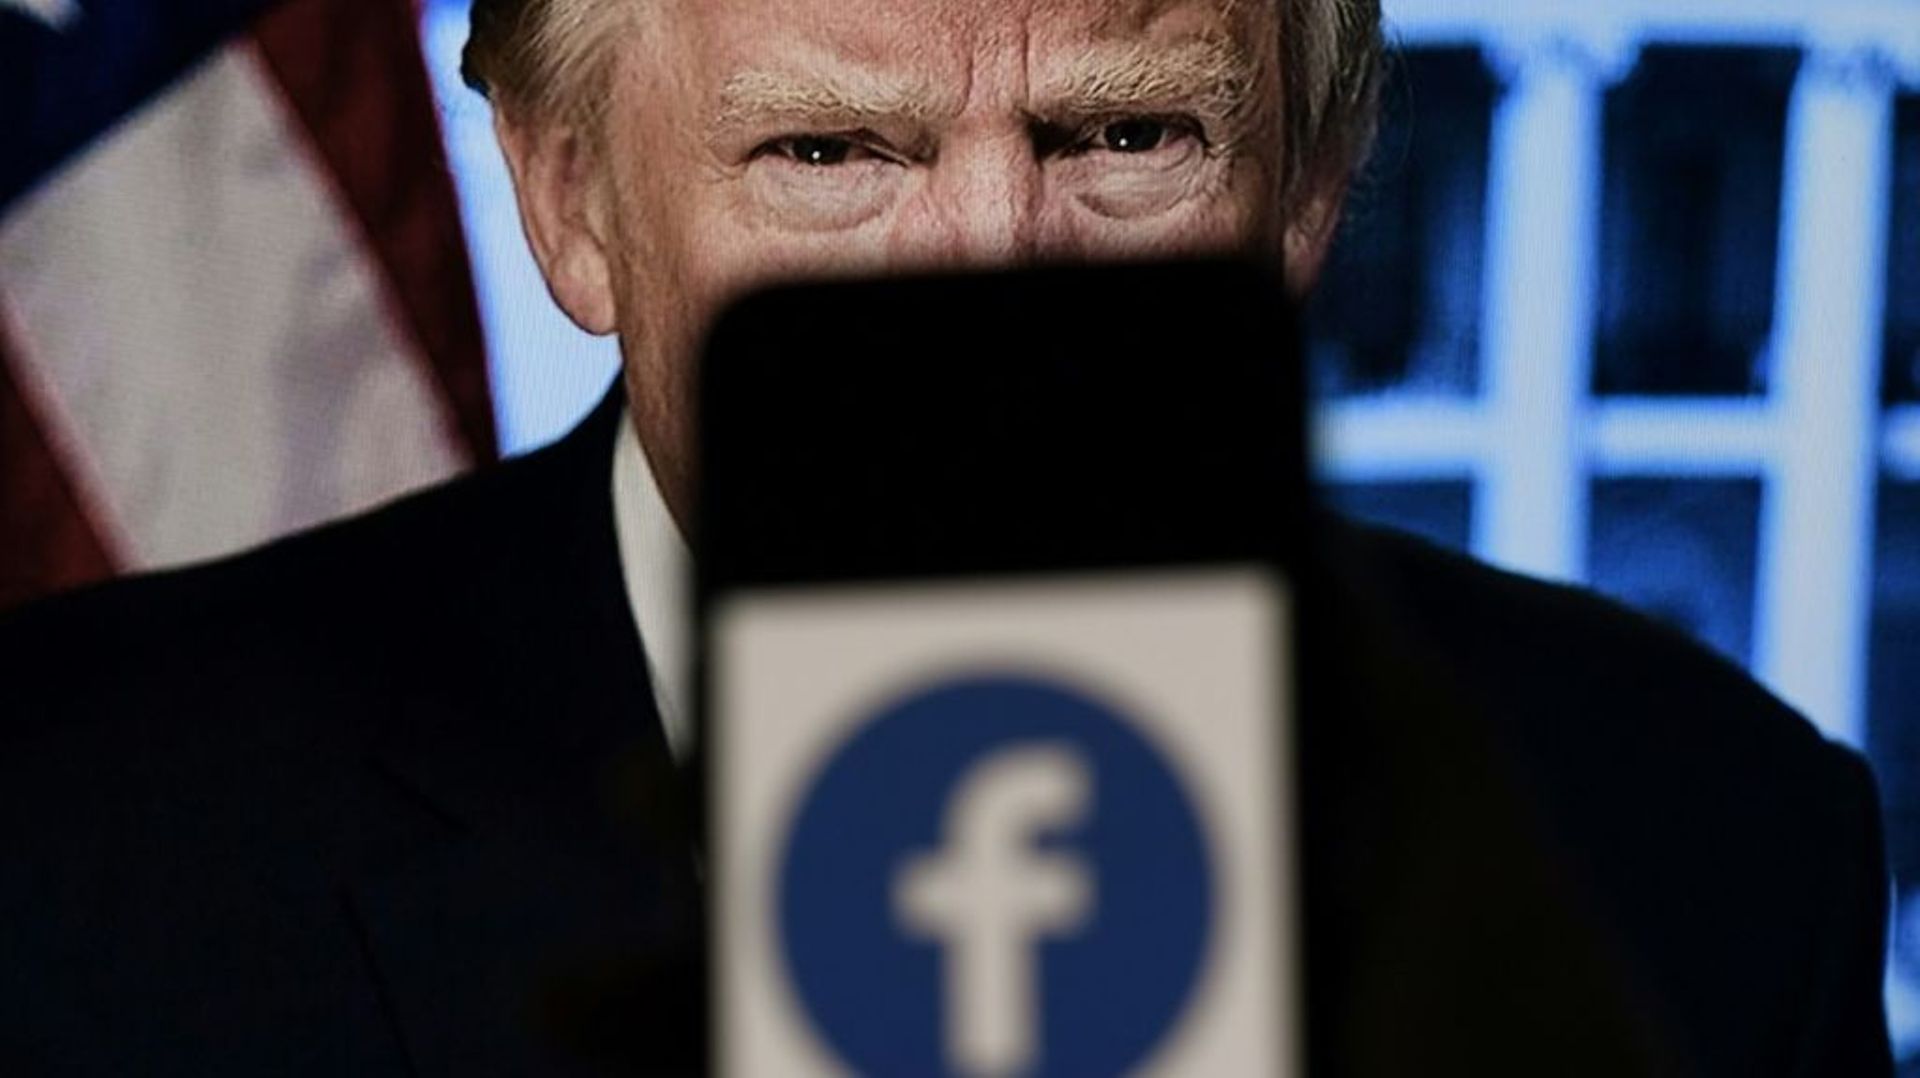 Trump méritait d'être banni de Facebook pour avoir "encouragé" l'invasion violente du Capitole par ses messages, assure l'un des dirigeants du réseau social